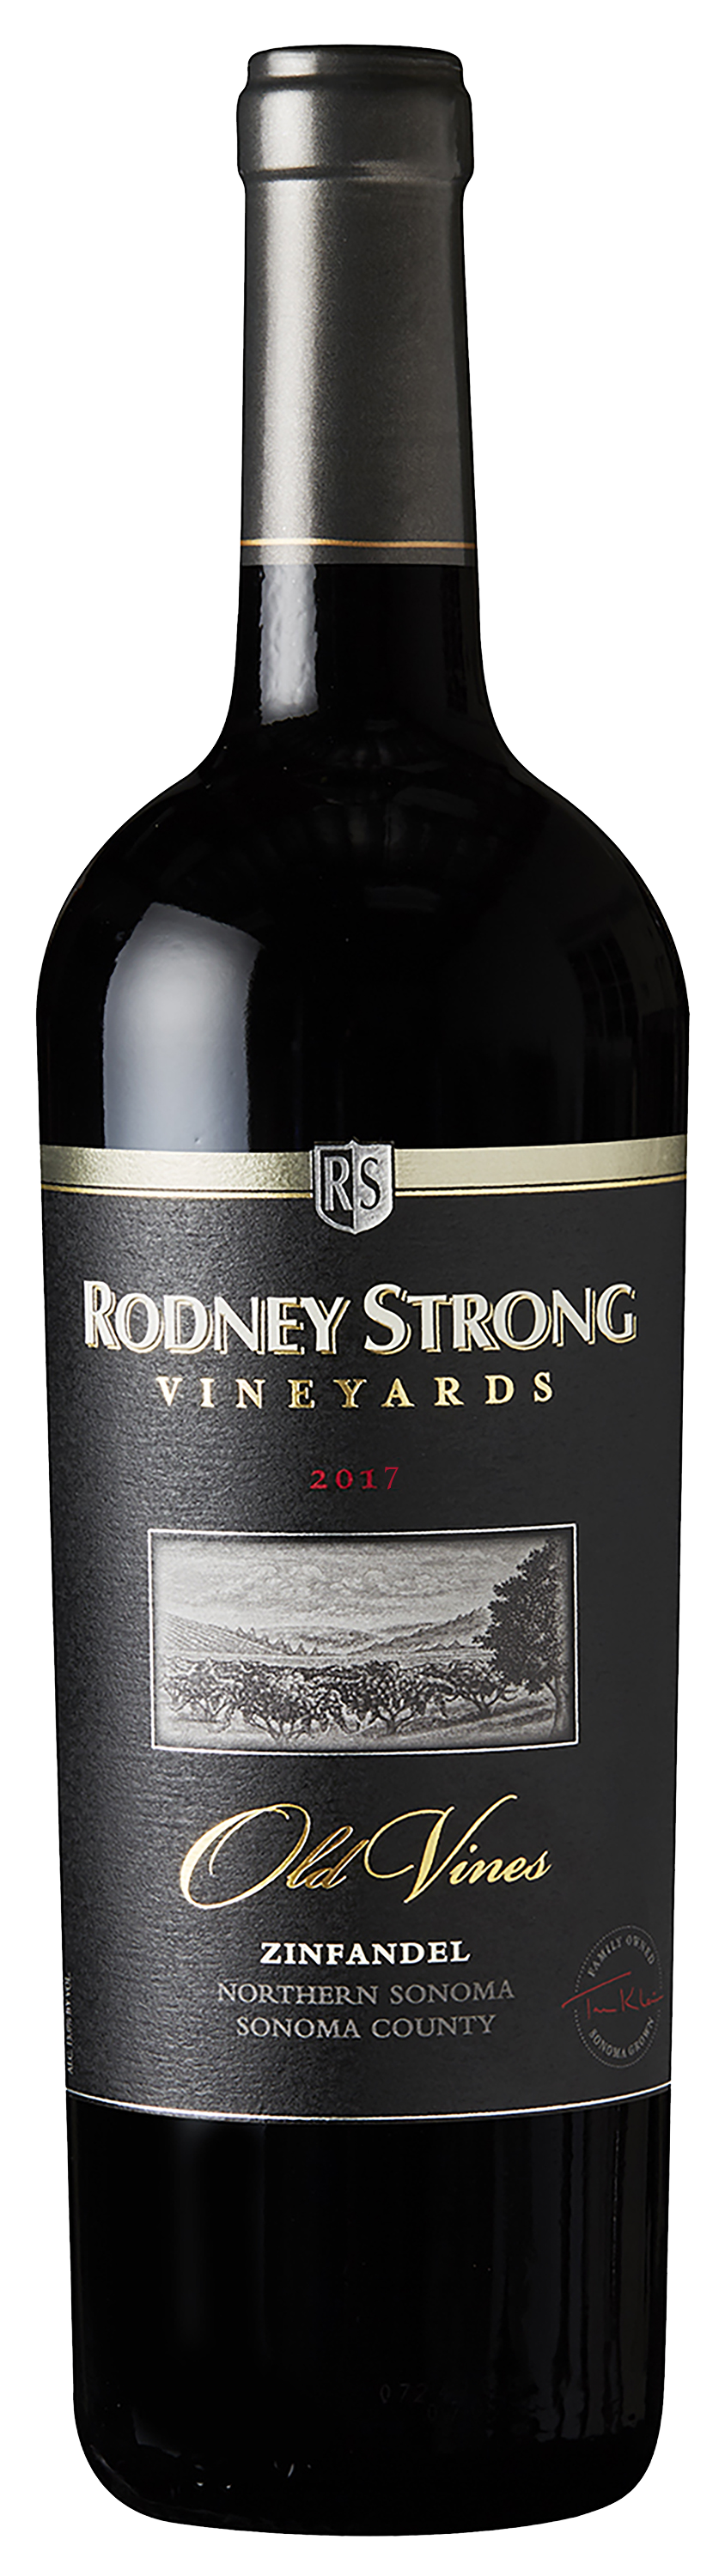 Bottle of Rodney Strong Vineyards Old Vines Zinfandel